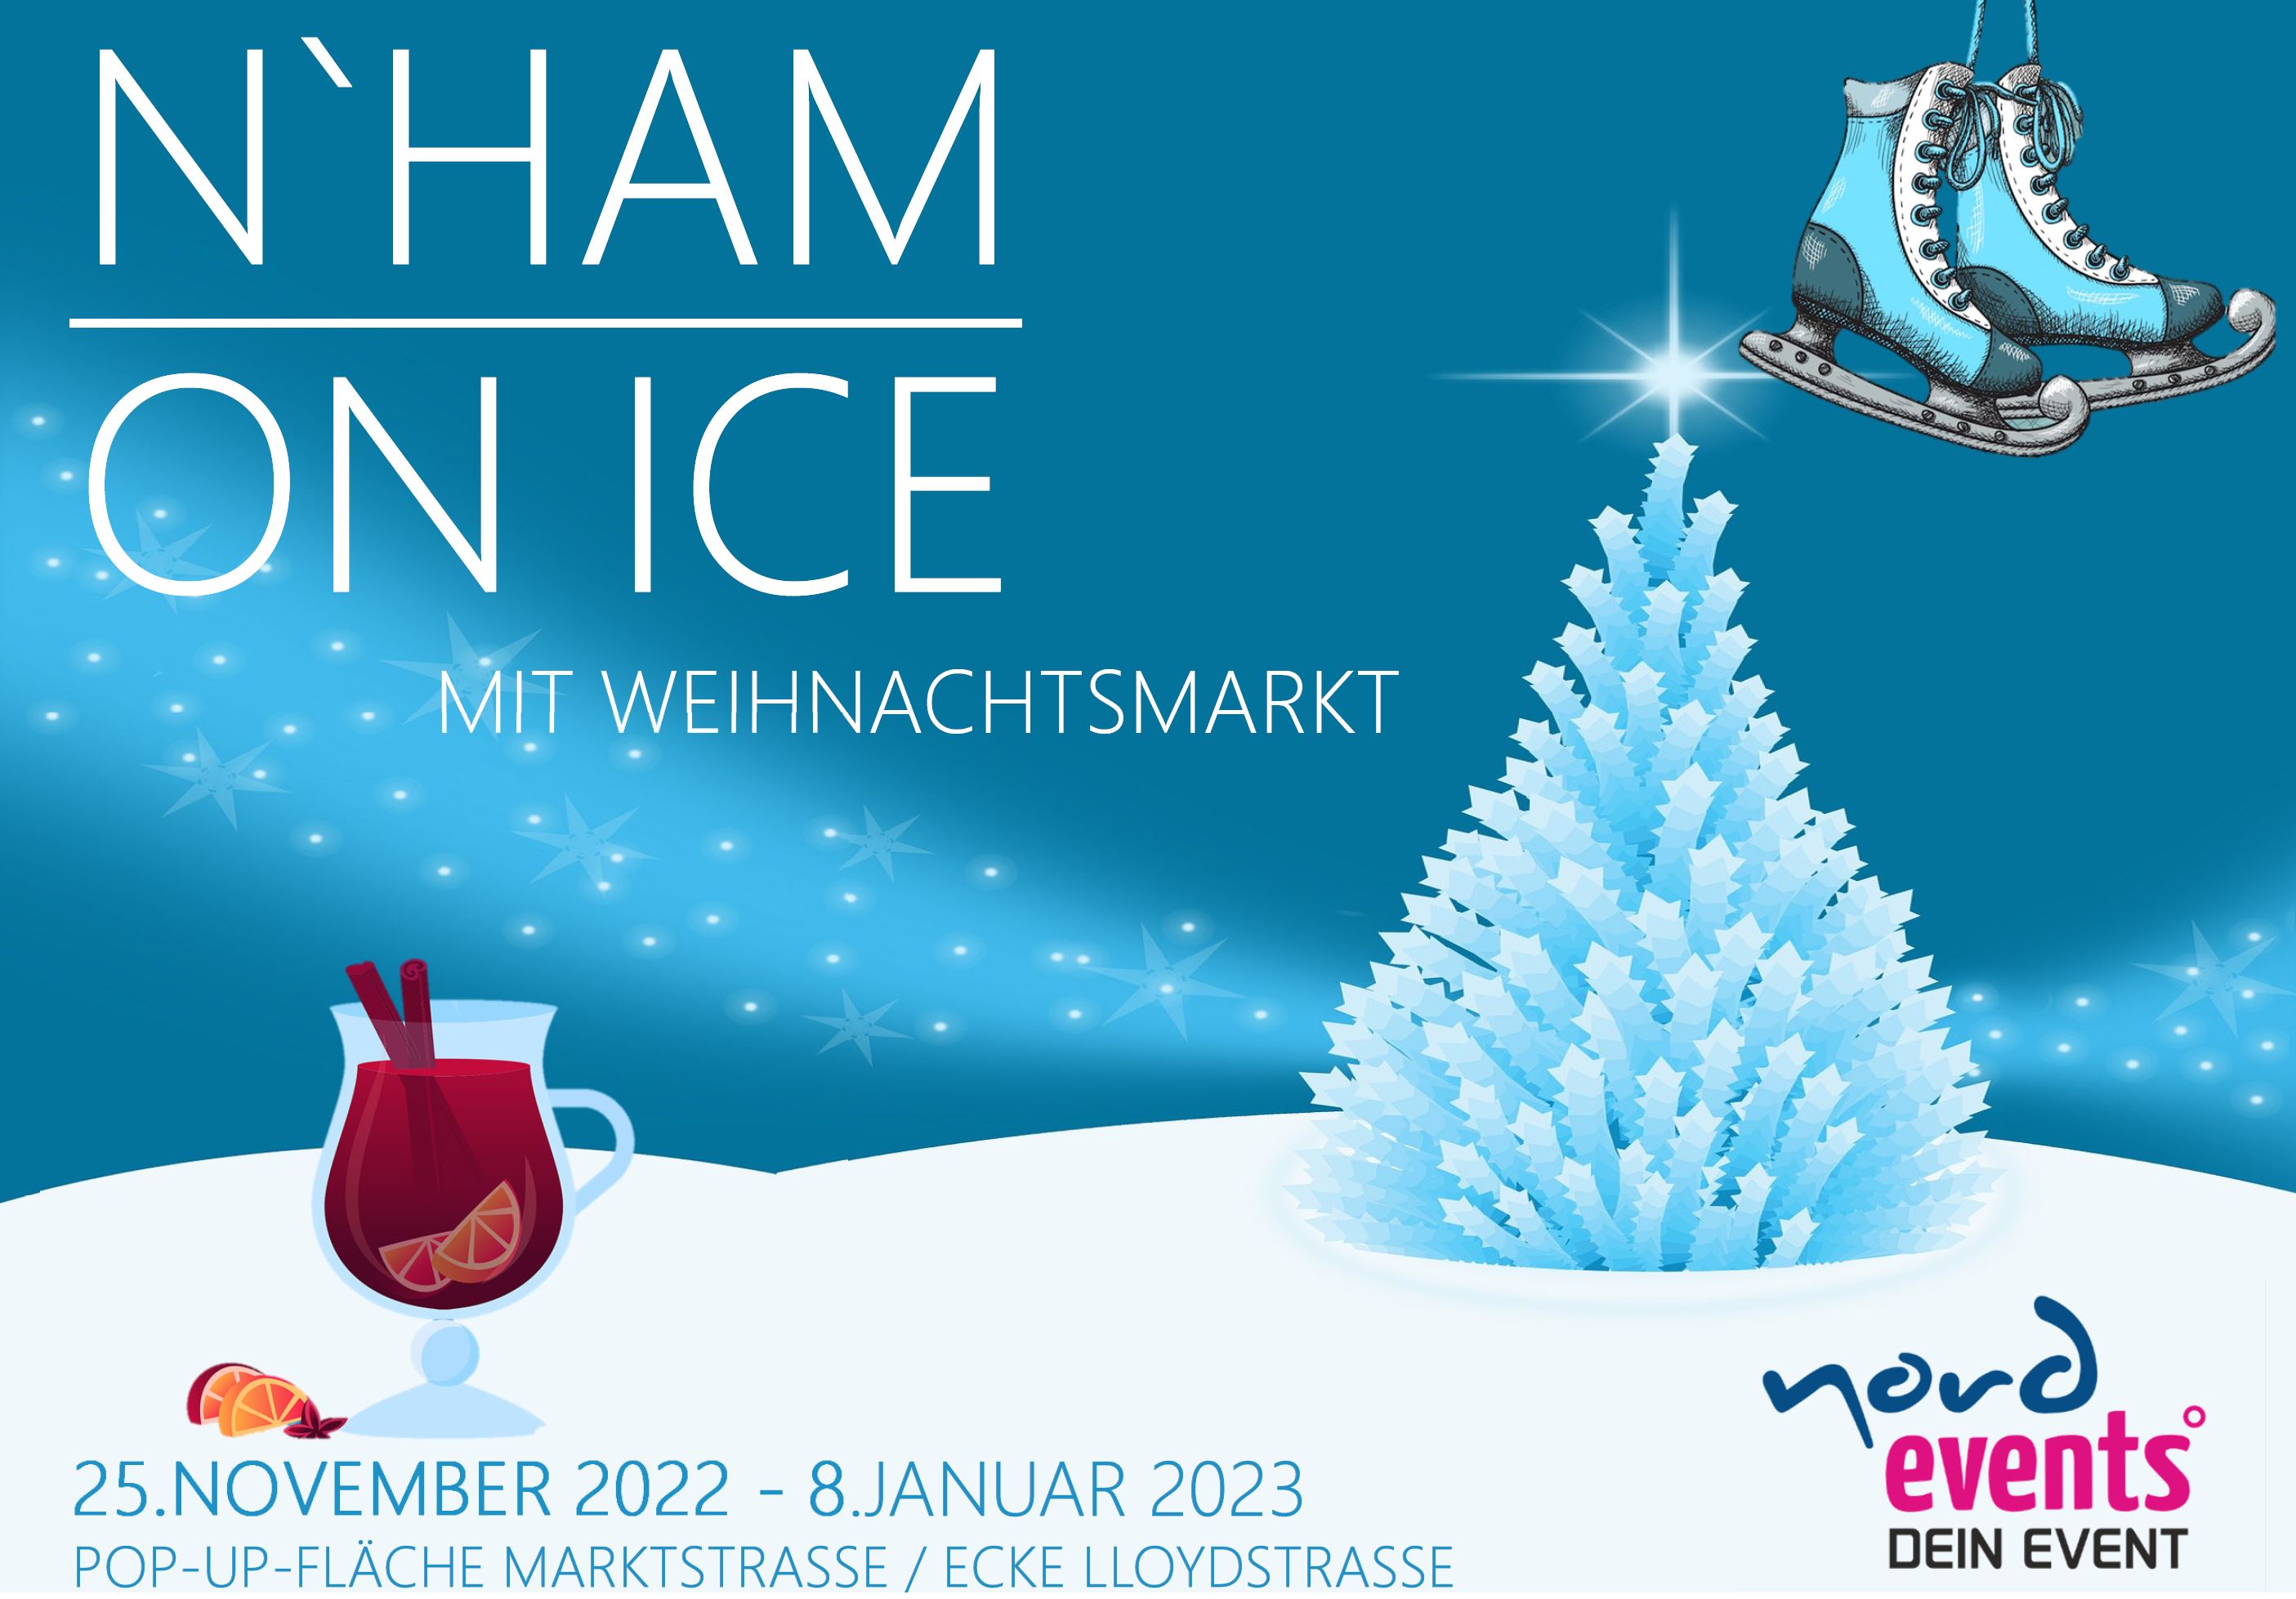 plakat nordenham on ice weihnachtsmarkt 2022